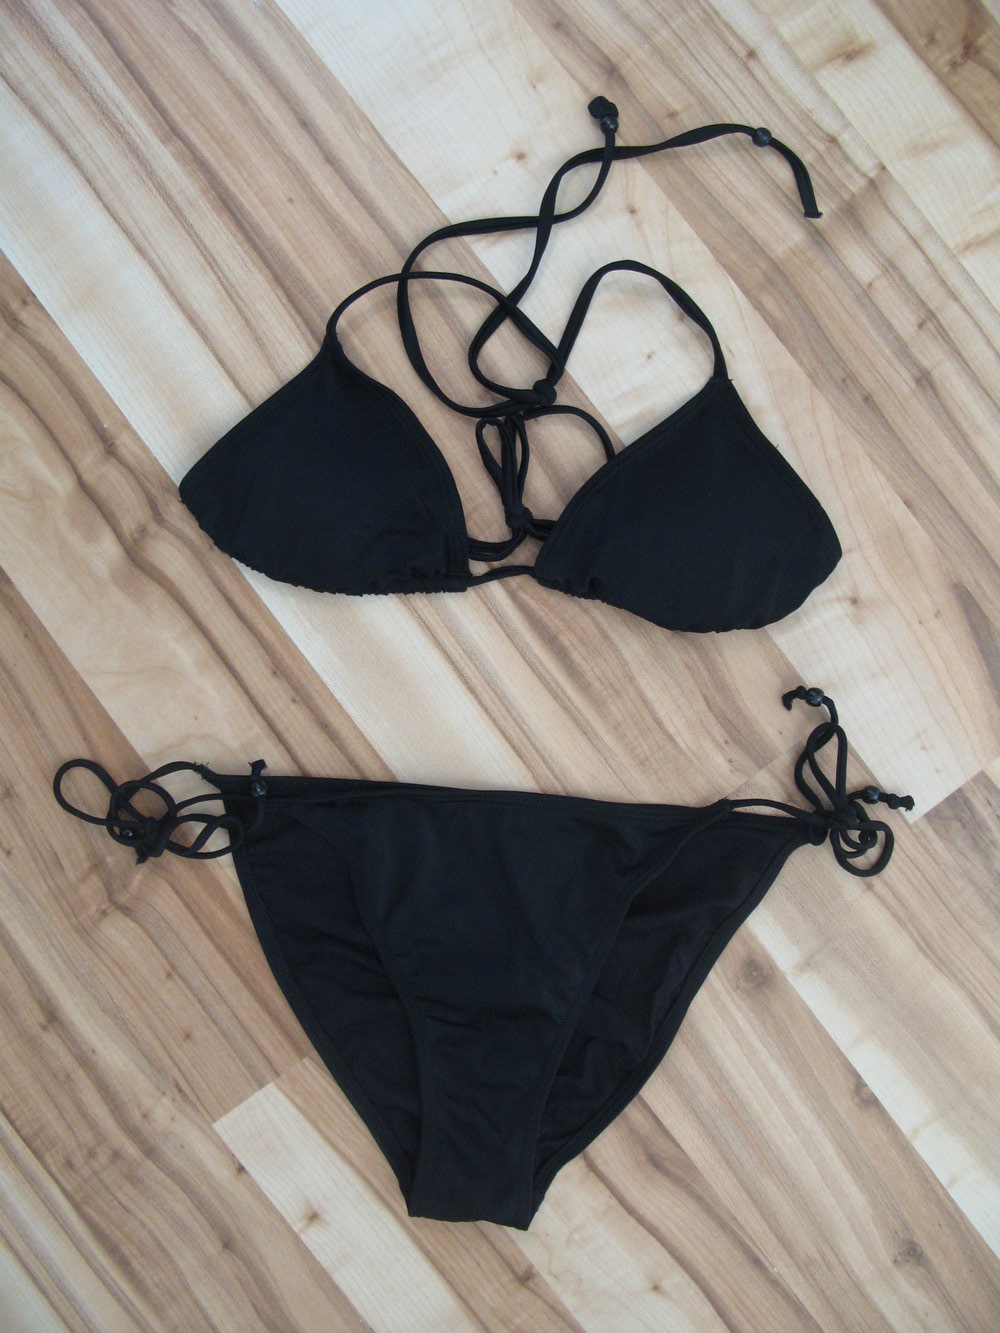 H&M Triangel Push Up Bikini mit Bändern und Perlen in schwarz Gr. S 36-38